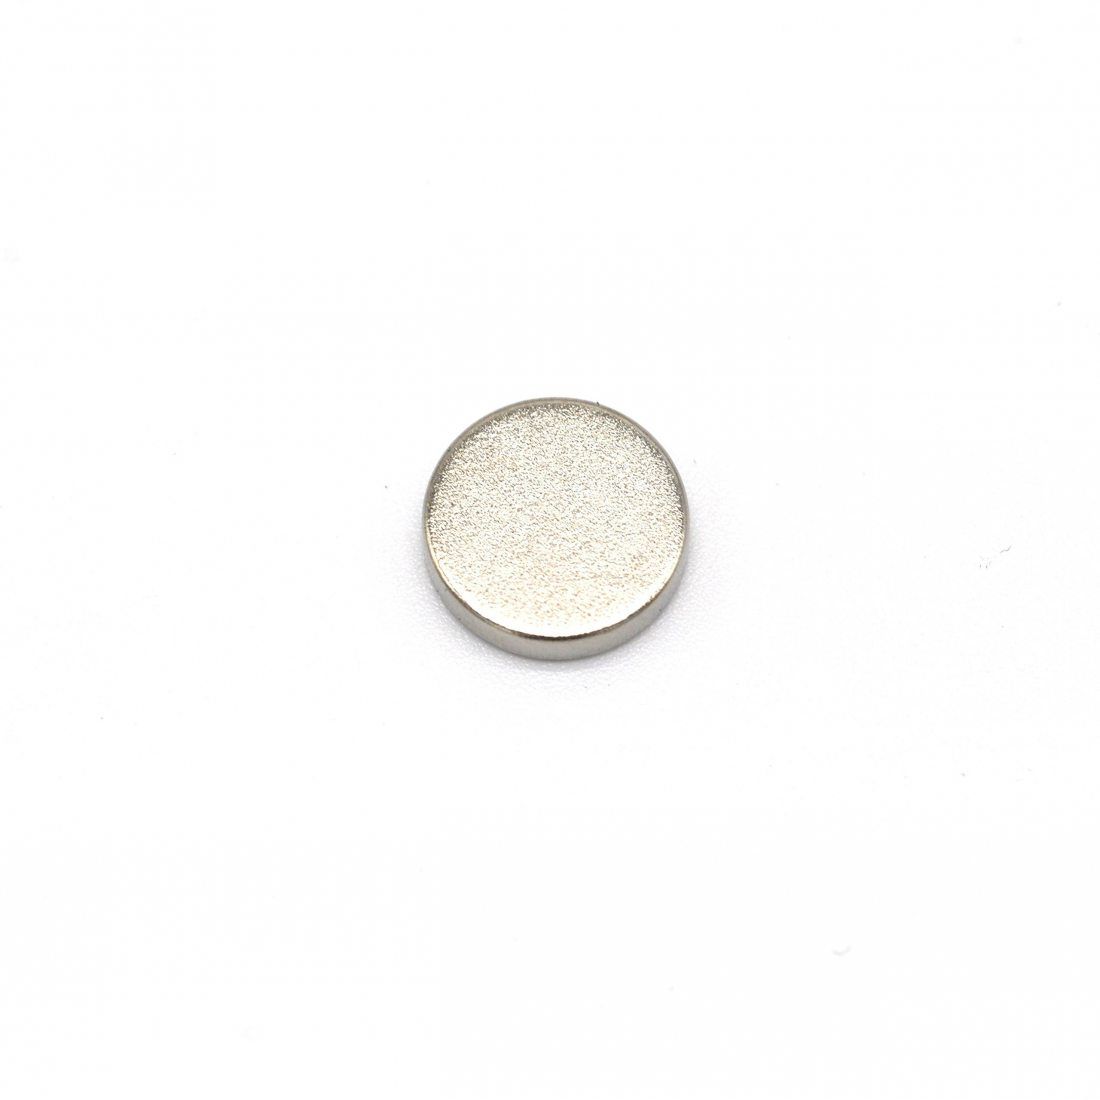 52 pièce Aimant de néodyme 10 mm de diamètre x 2 mm dépaisseur avec 2.2 kg Traction Magenesis lot de 52